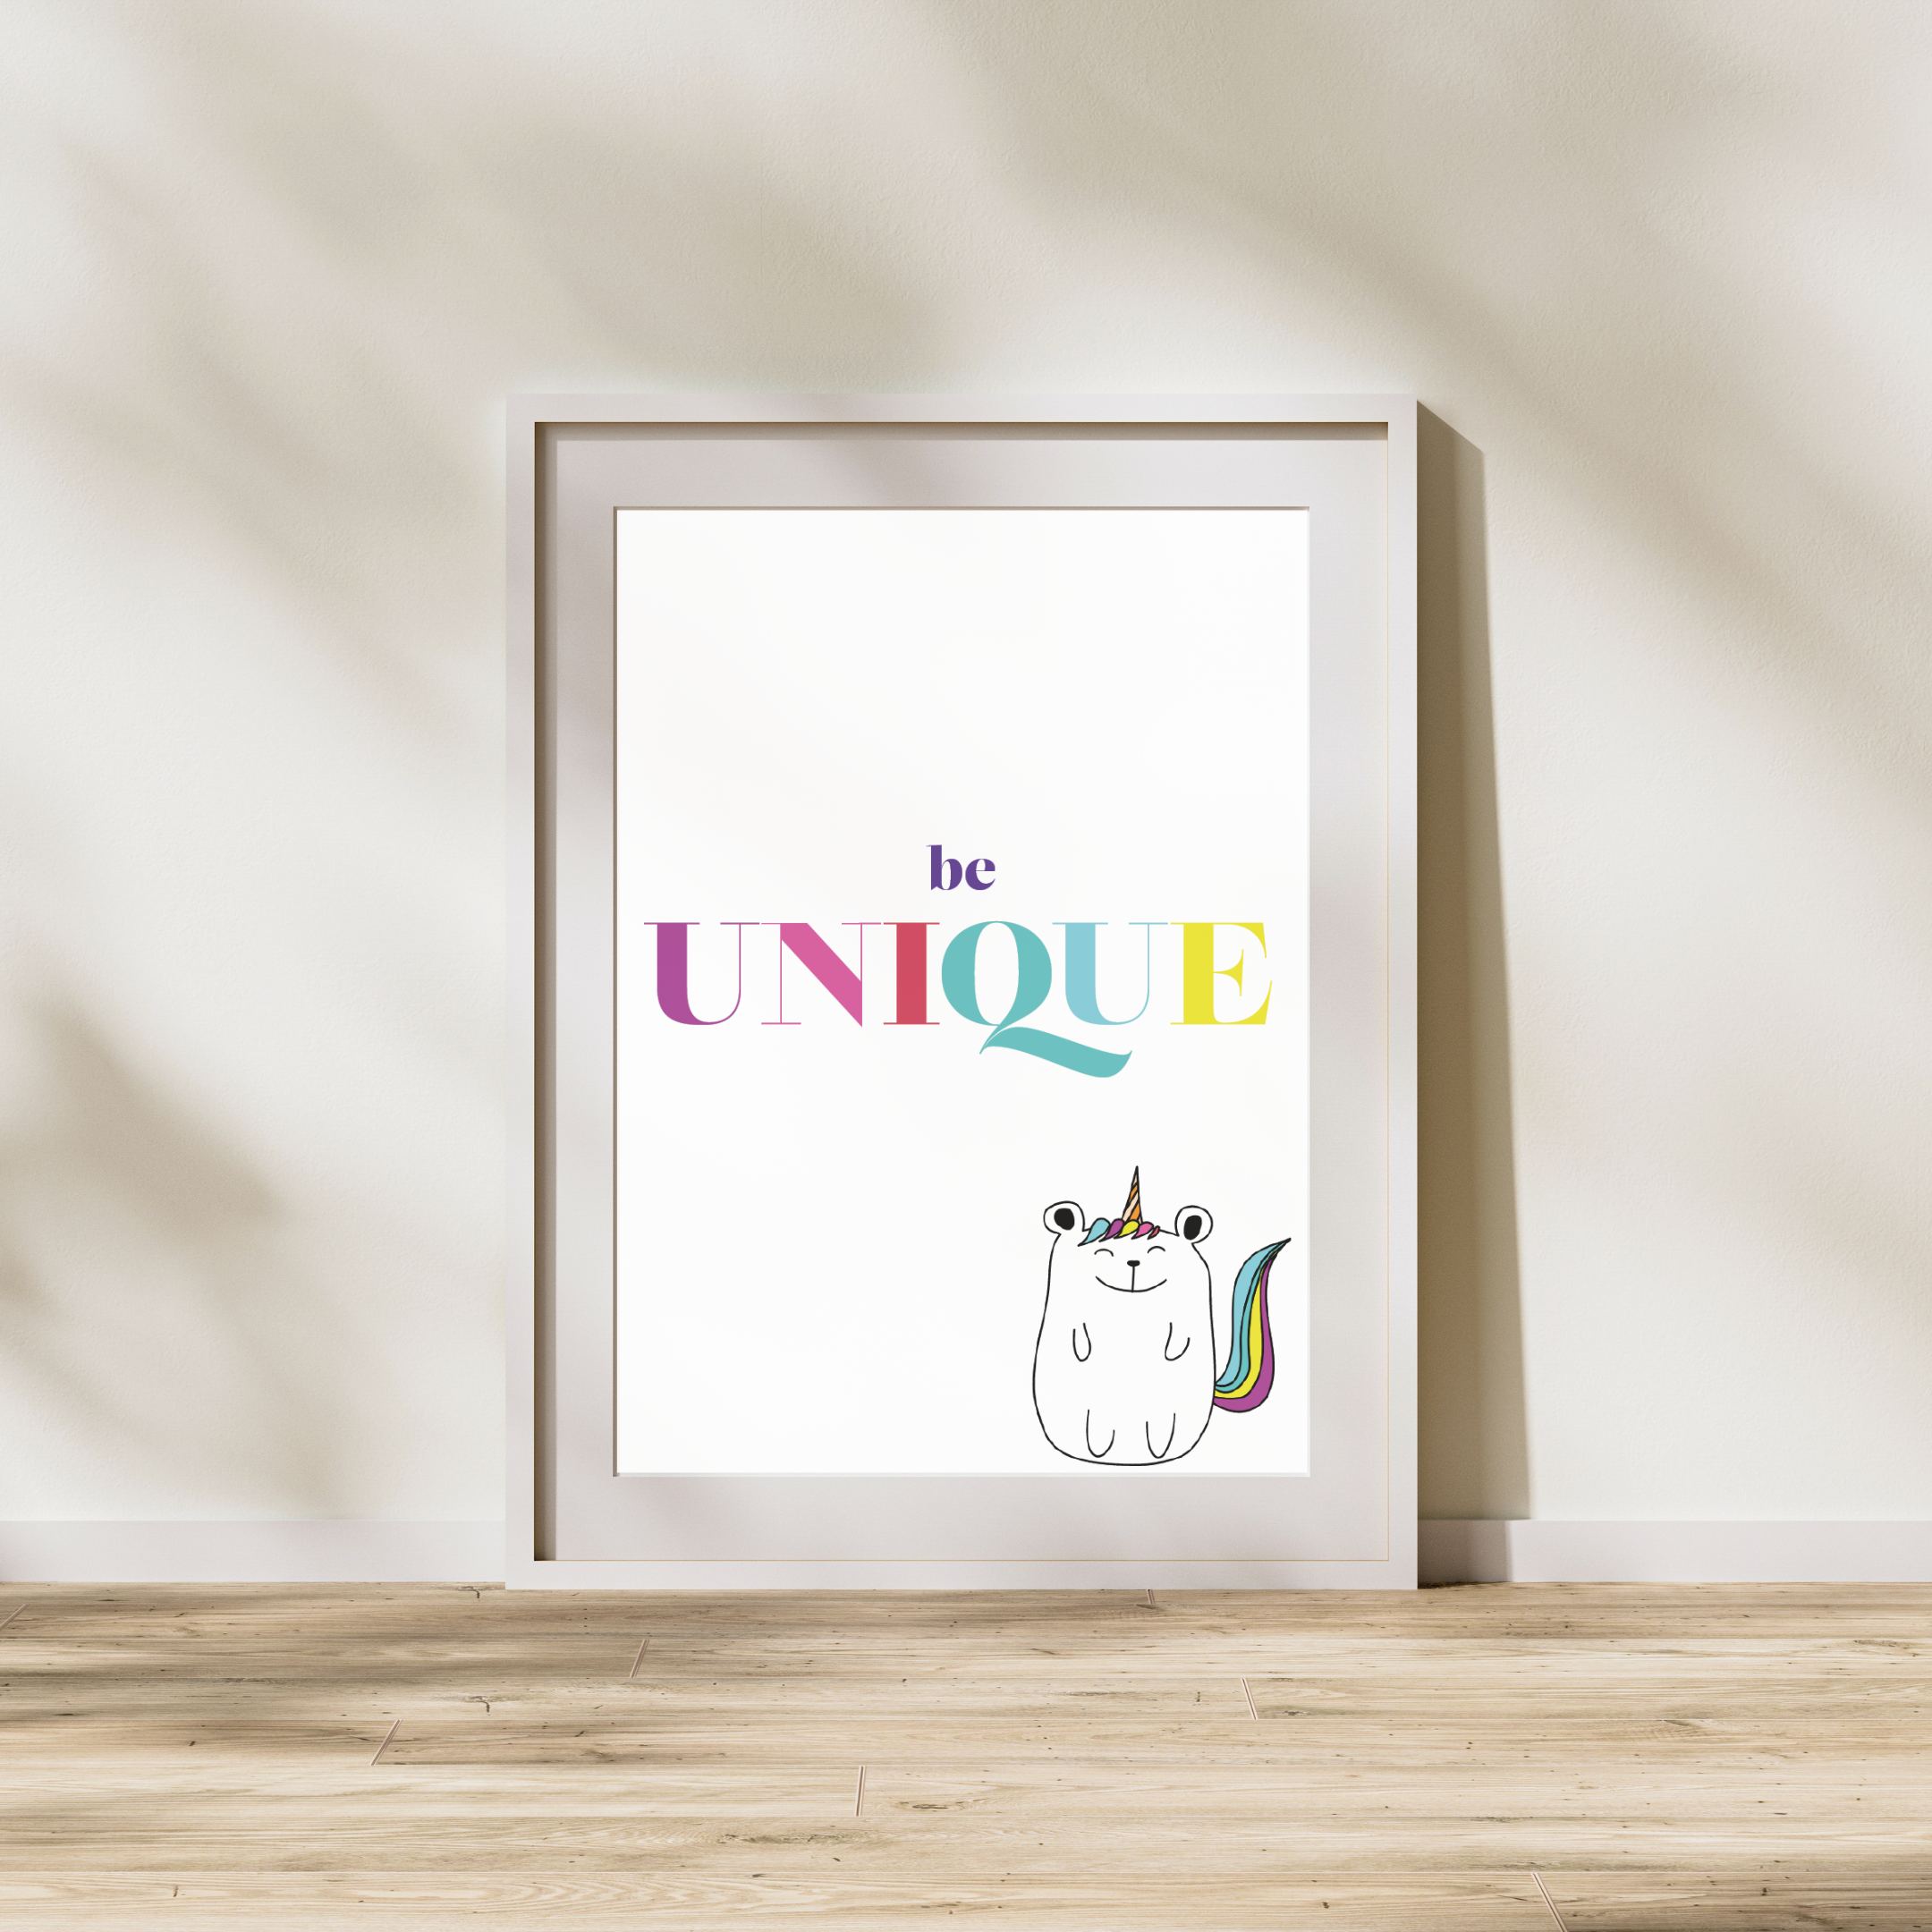 Be Unique - Plakat